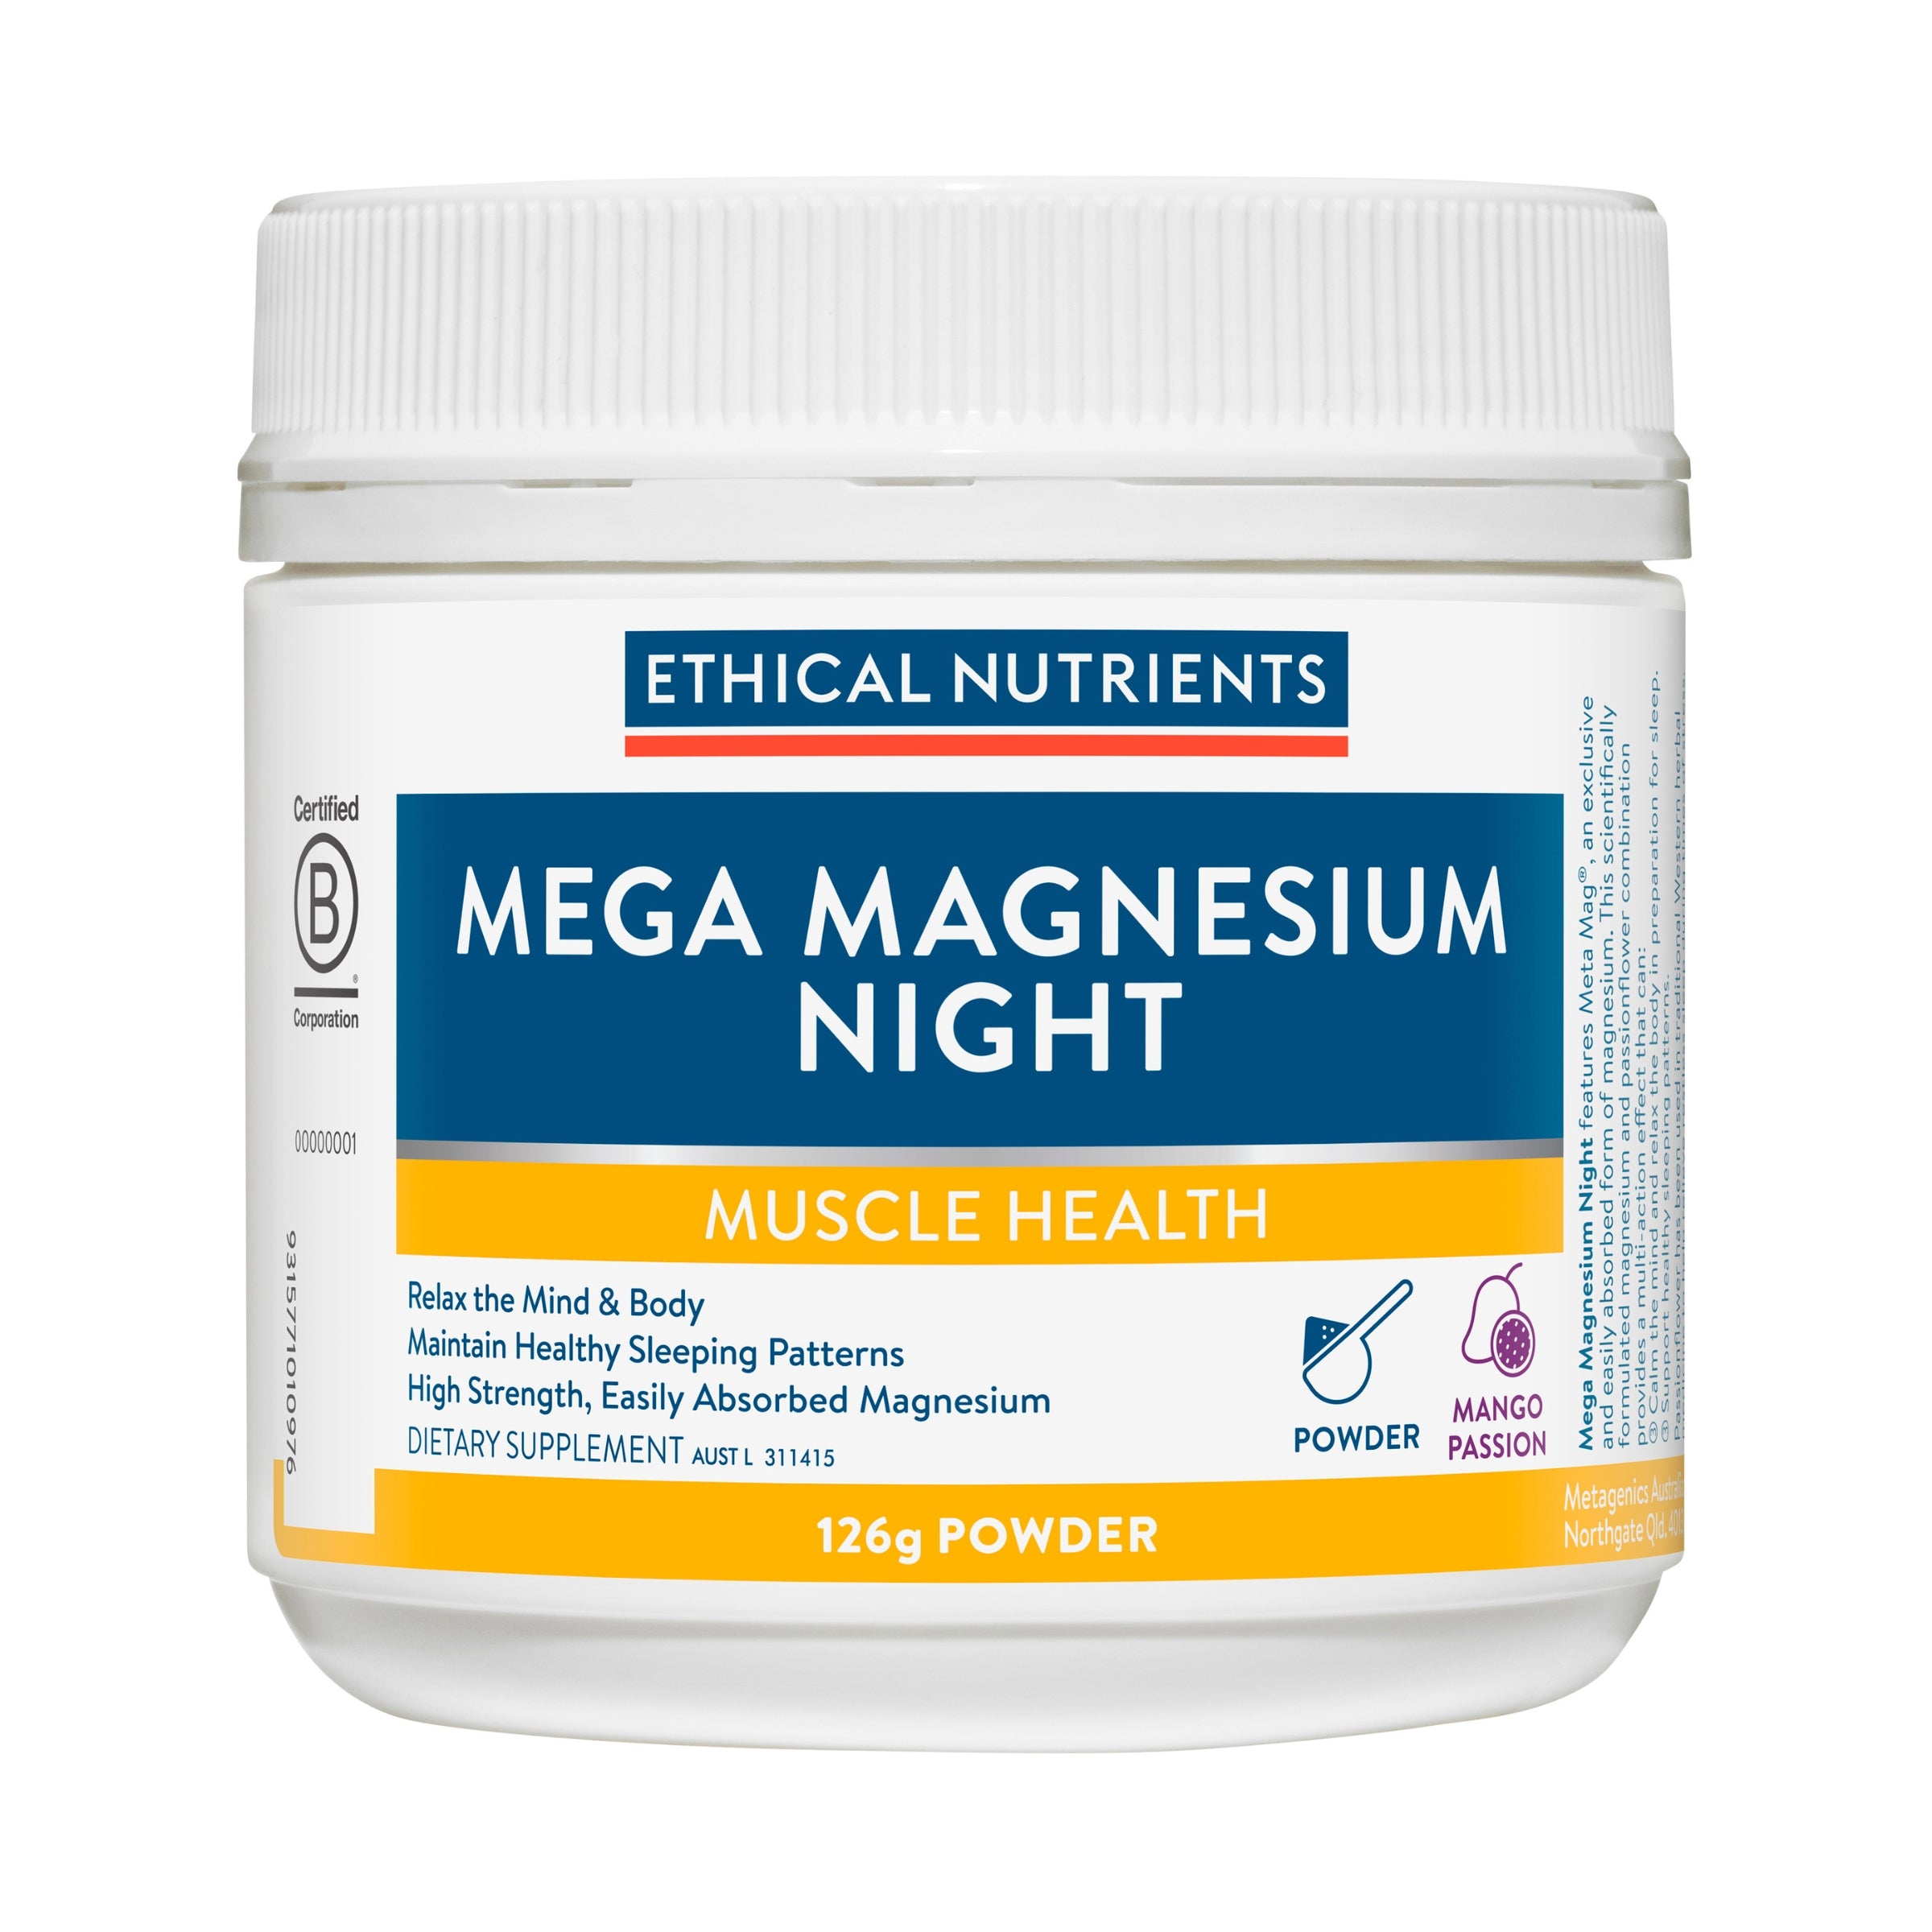 Ethical Nutrients Mega Magnesium Night Powder 126g #size_126g